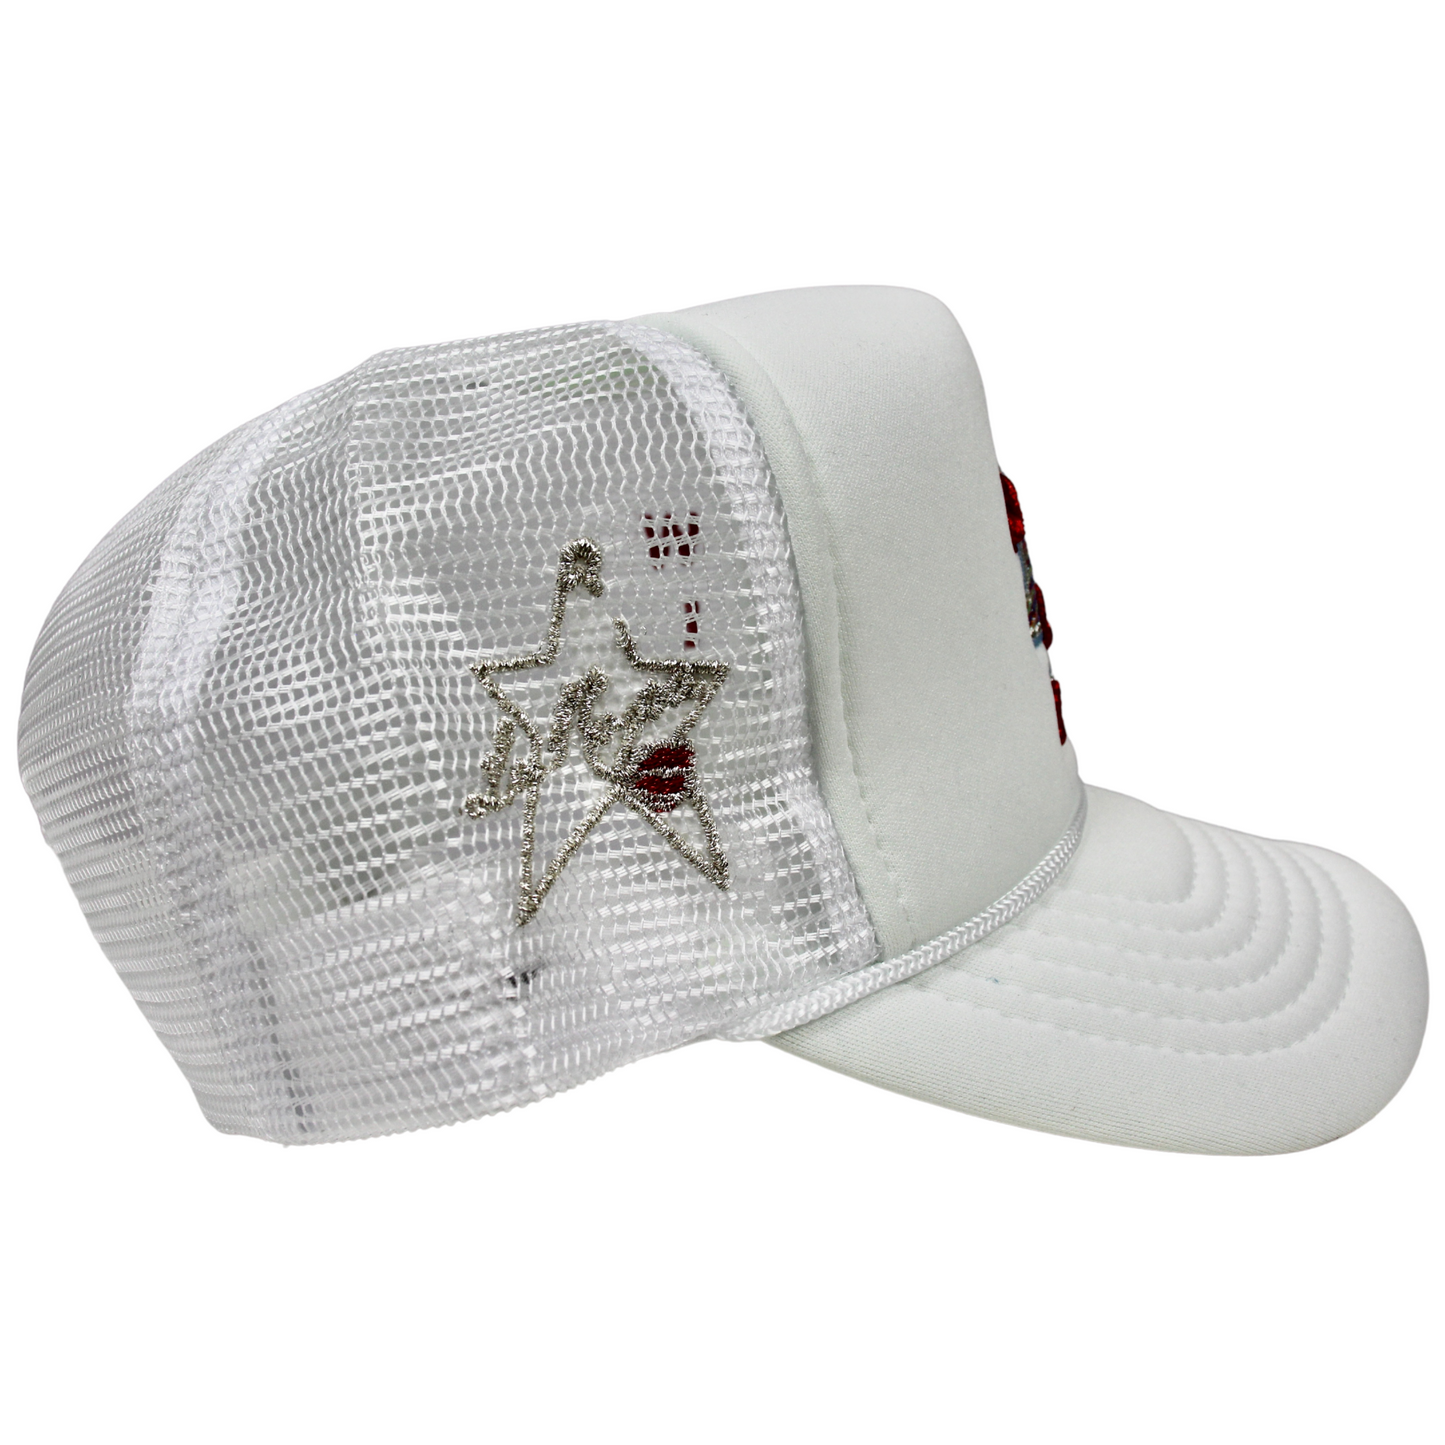 La Ropa LR Logo "Jake Paul" Trucker Hat (White)